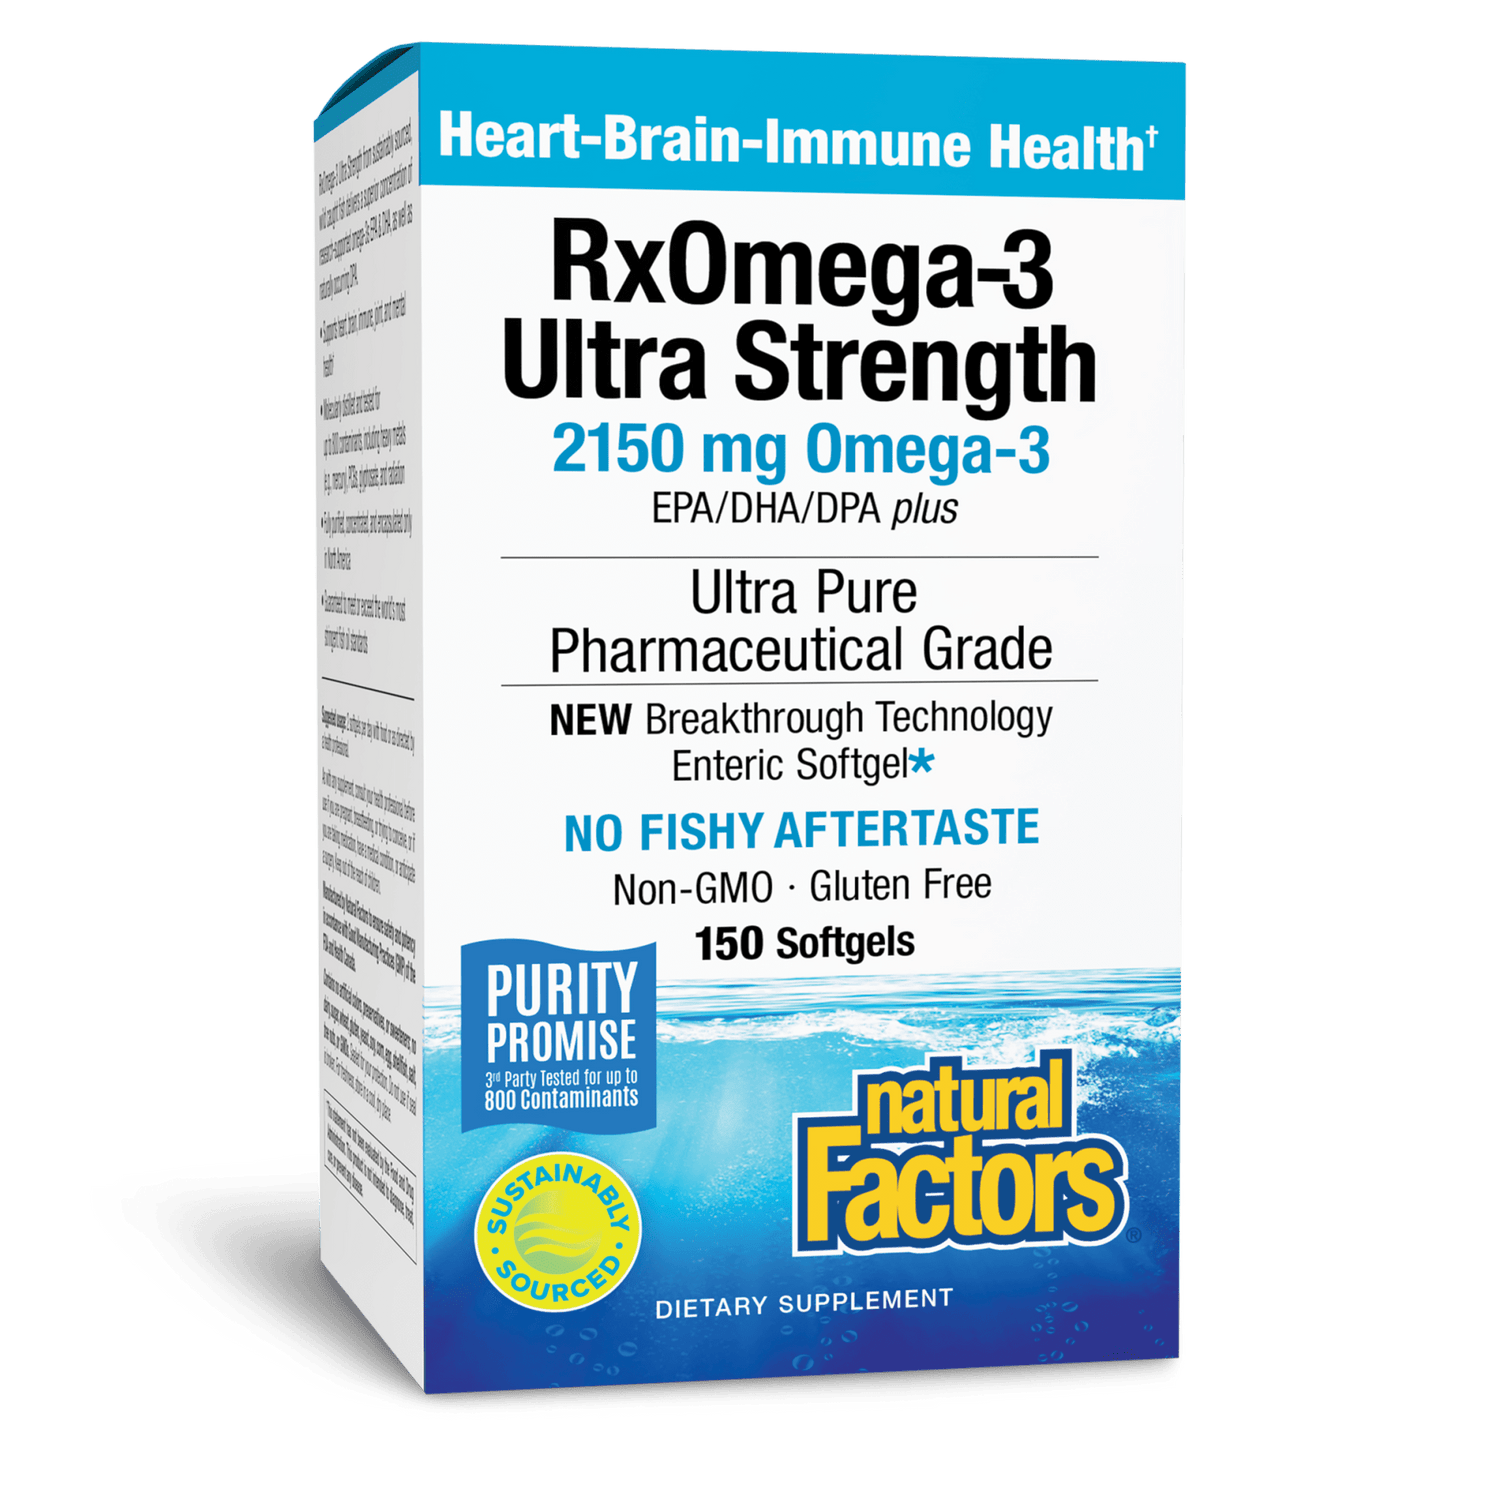 RxOmega-3 Ultra Strength 2,150 mg EPA/DHA/DPA Enteripure®|variant|hi-res|35493U